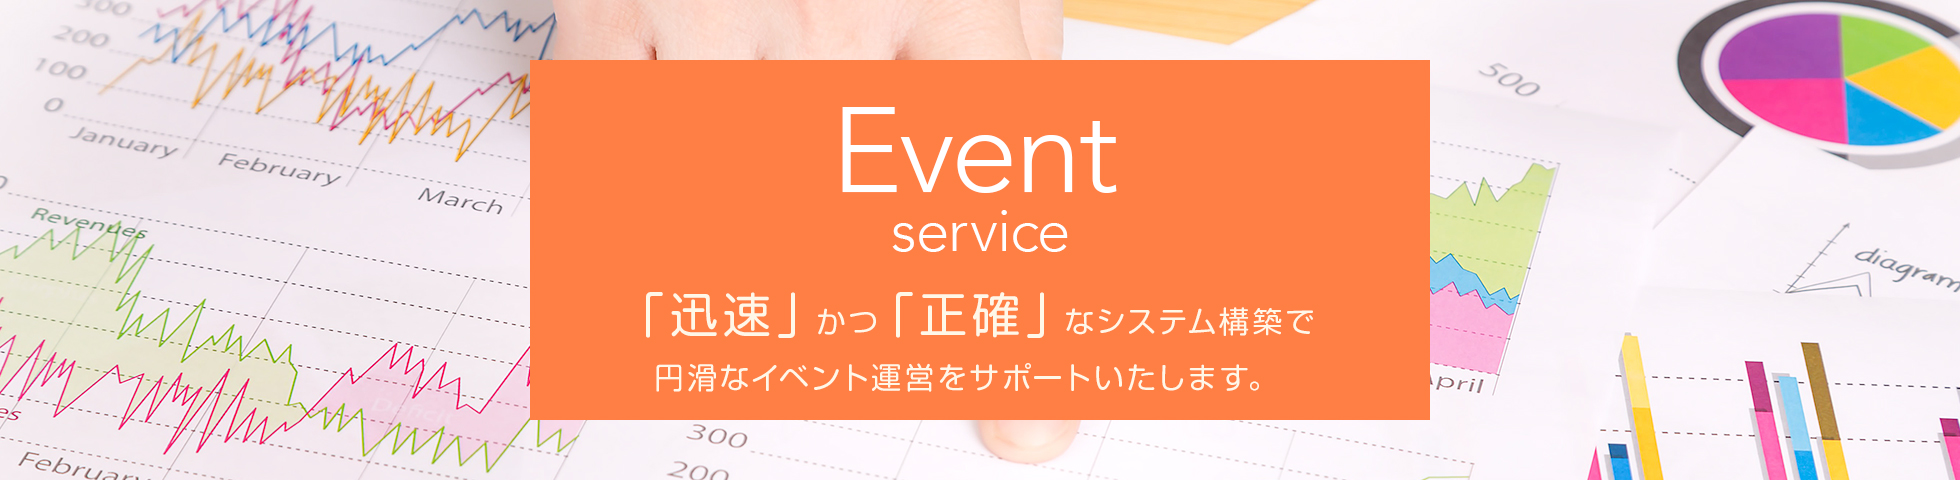 Event service 「迅速」かつ「正確」なシステム構築で円滑なイベント運営をサポートいたします。